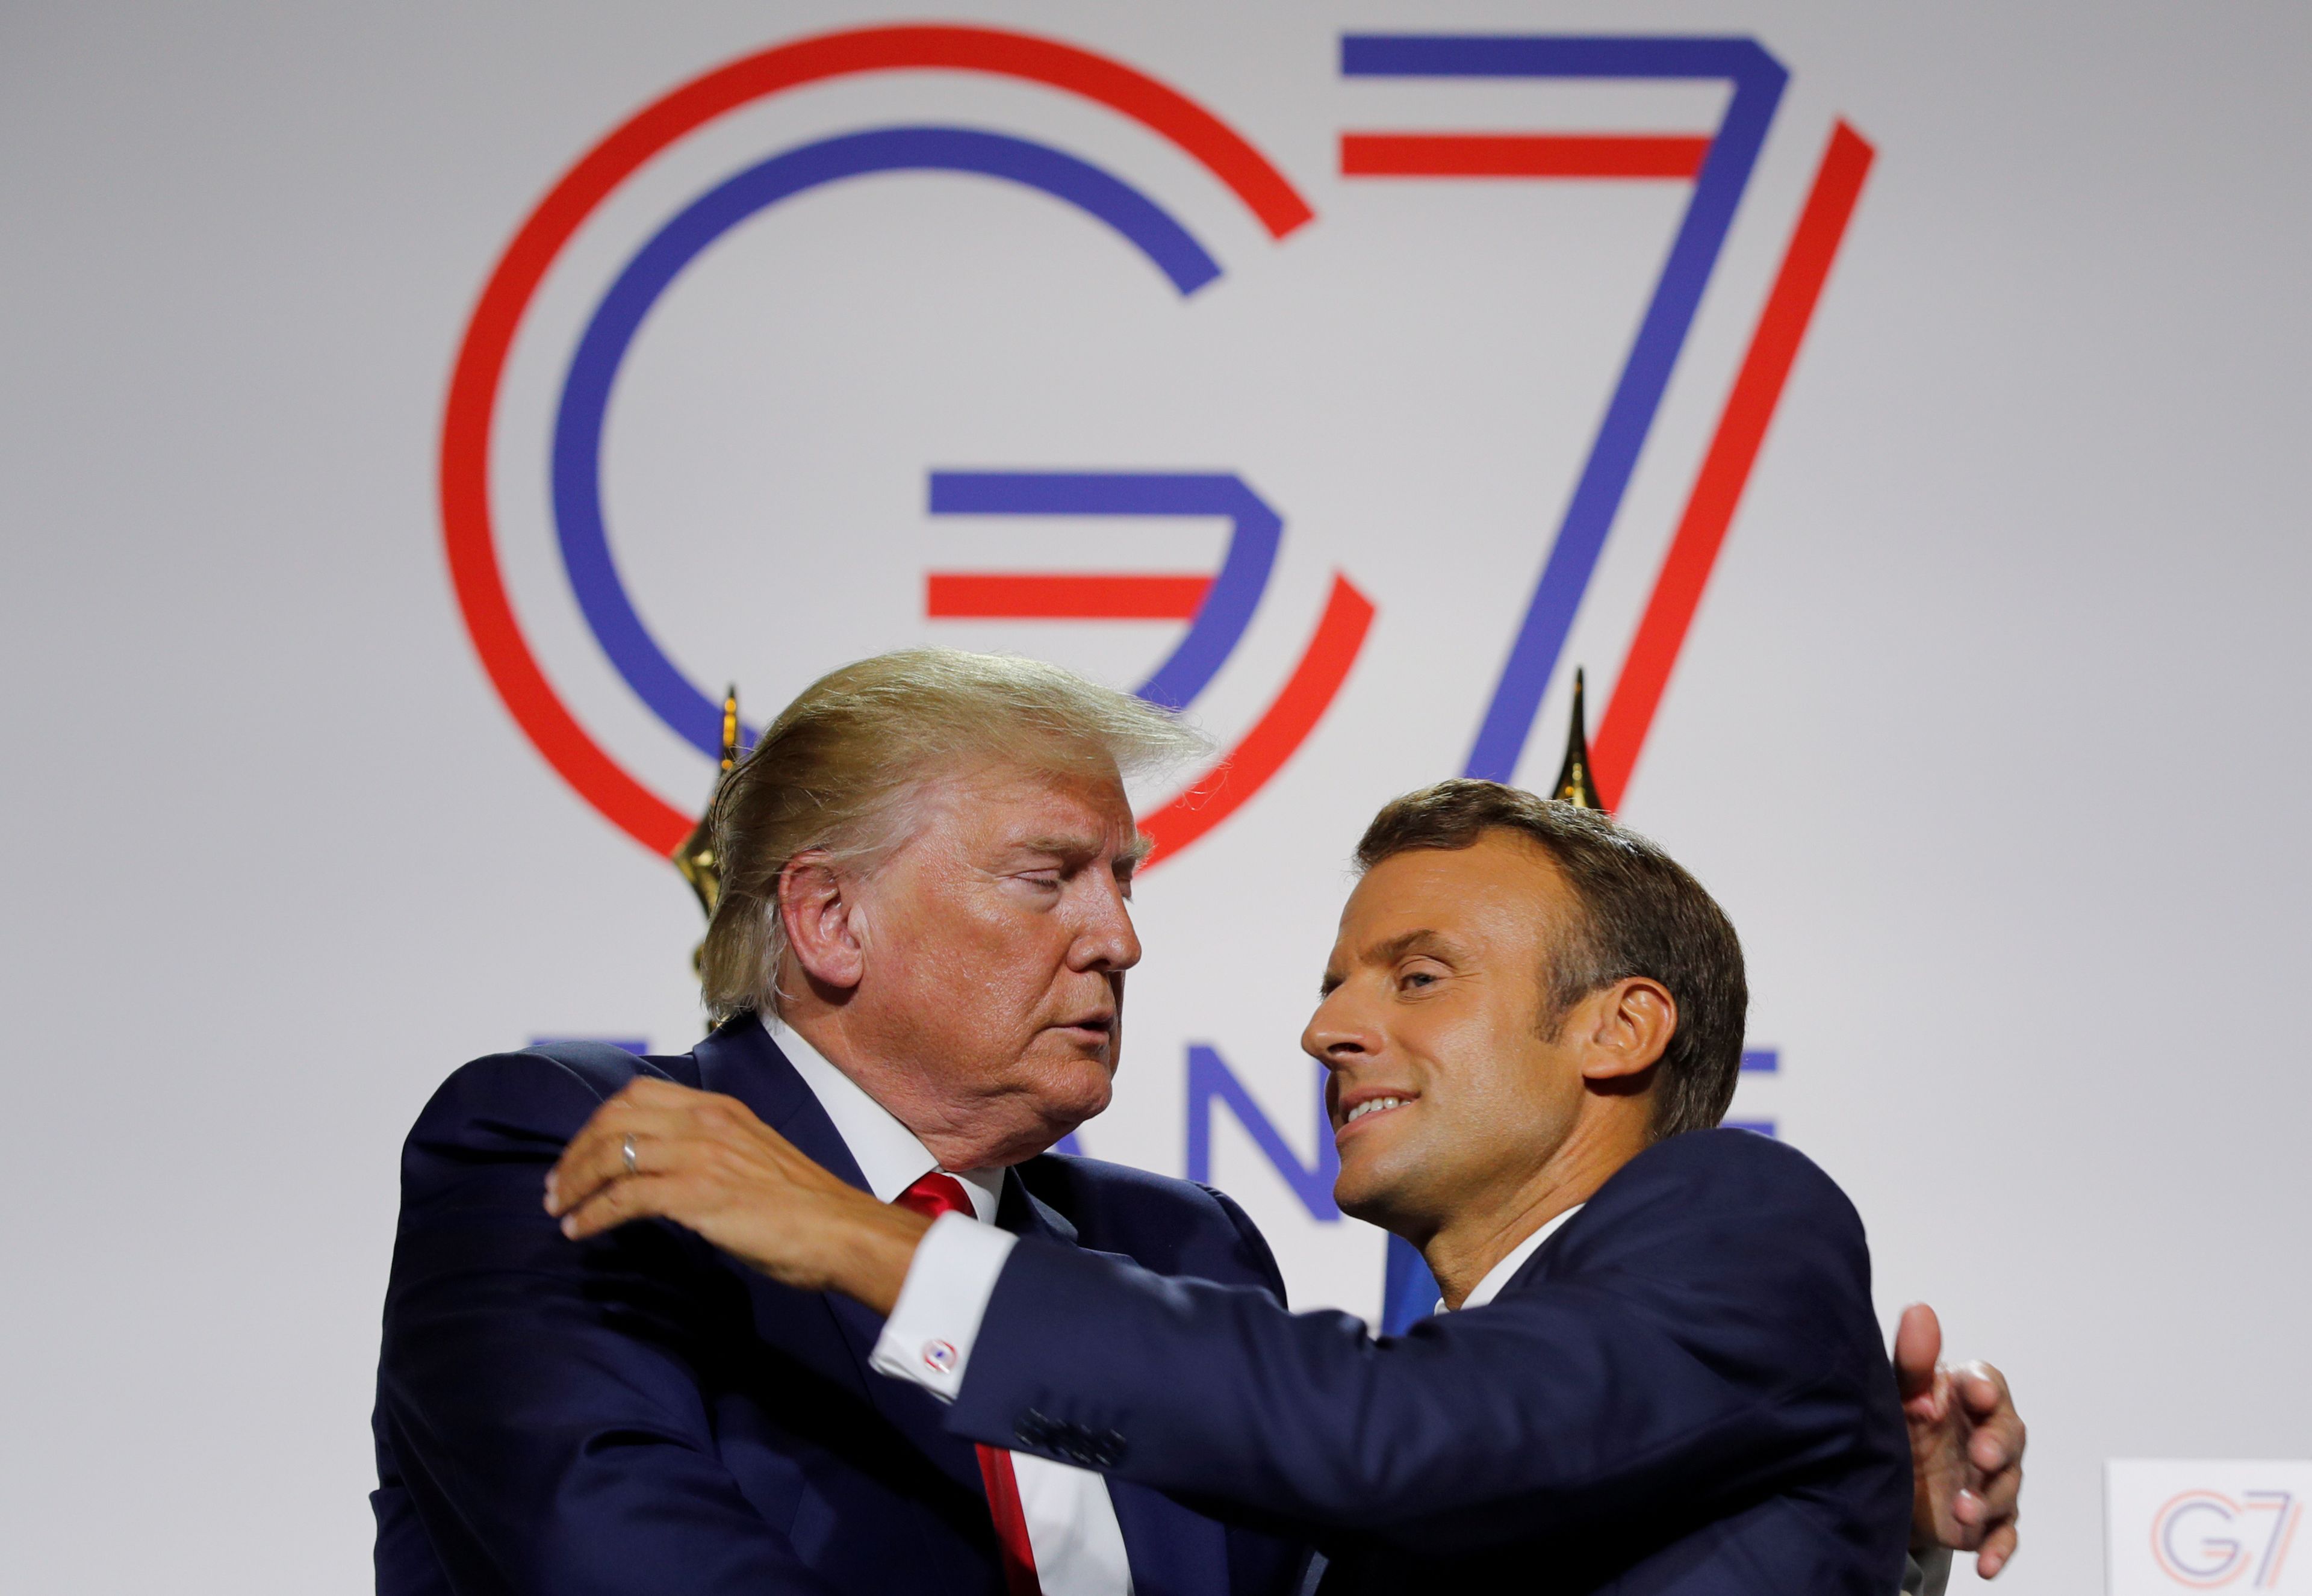 Donald Trump, presidente de los Estados Unidos, y Emmanuel Macron, presidente de Francia, durante su comparecencia en la cumbre del G7 en Biarritz.